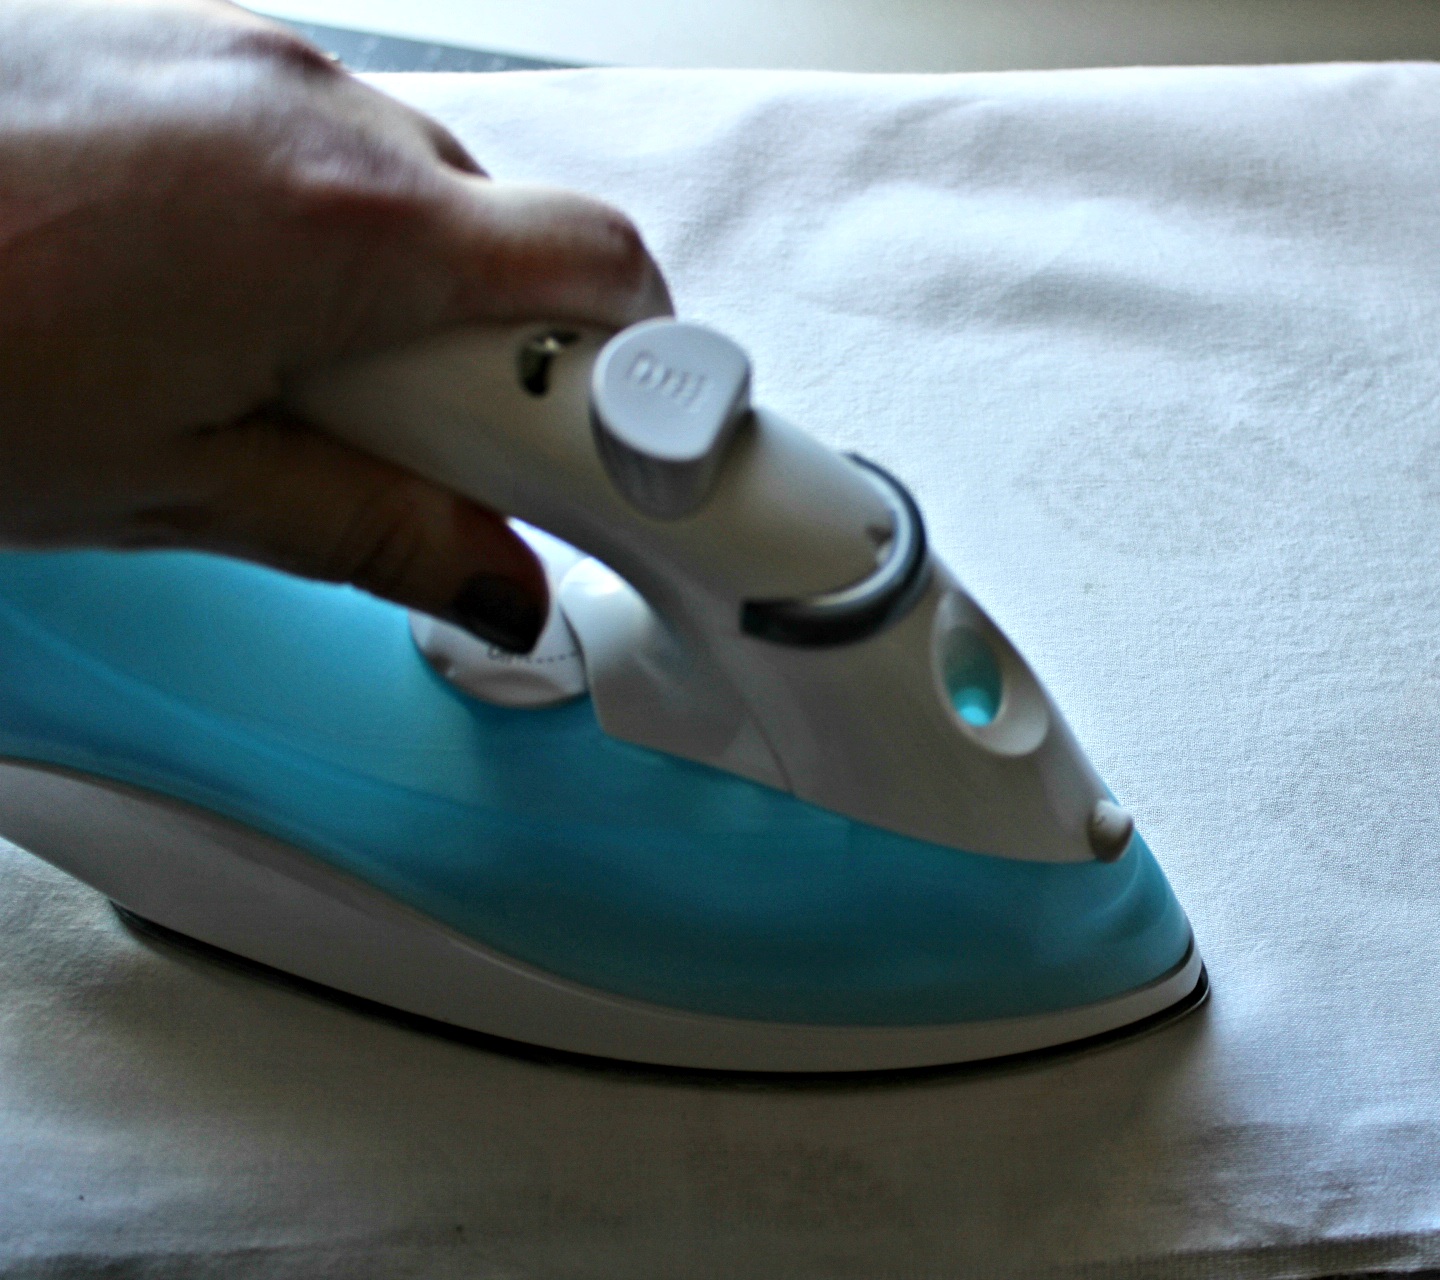 Ironing the DIY tea towel.